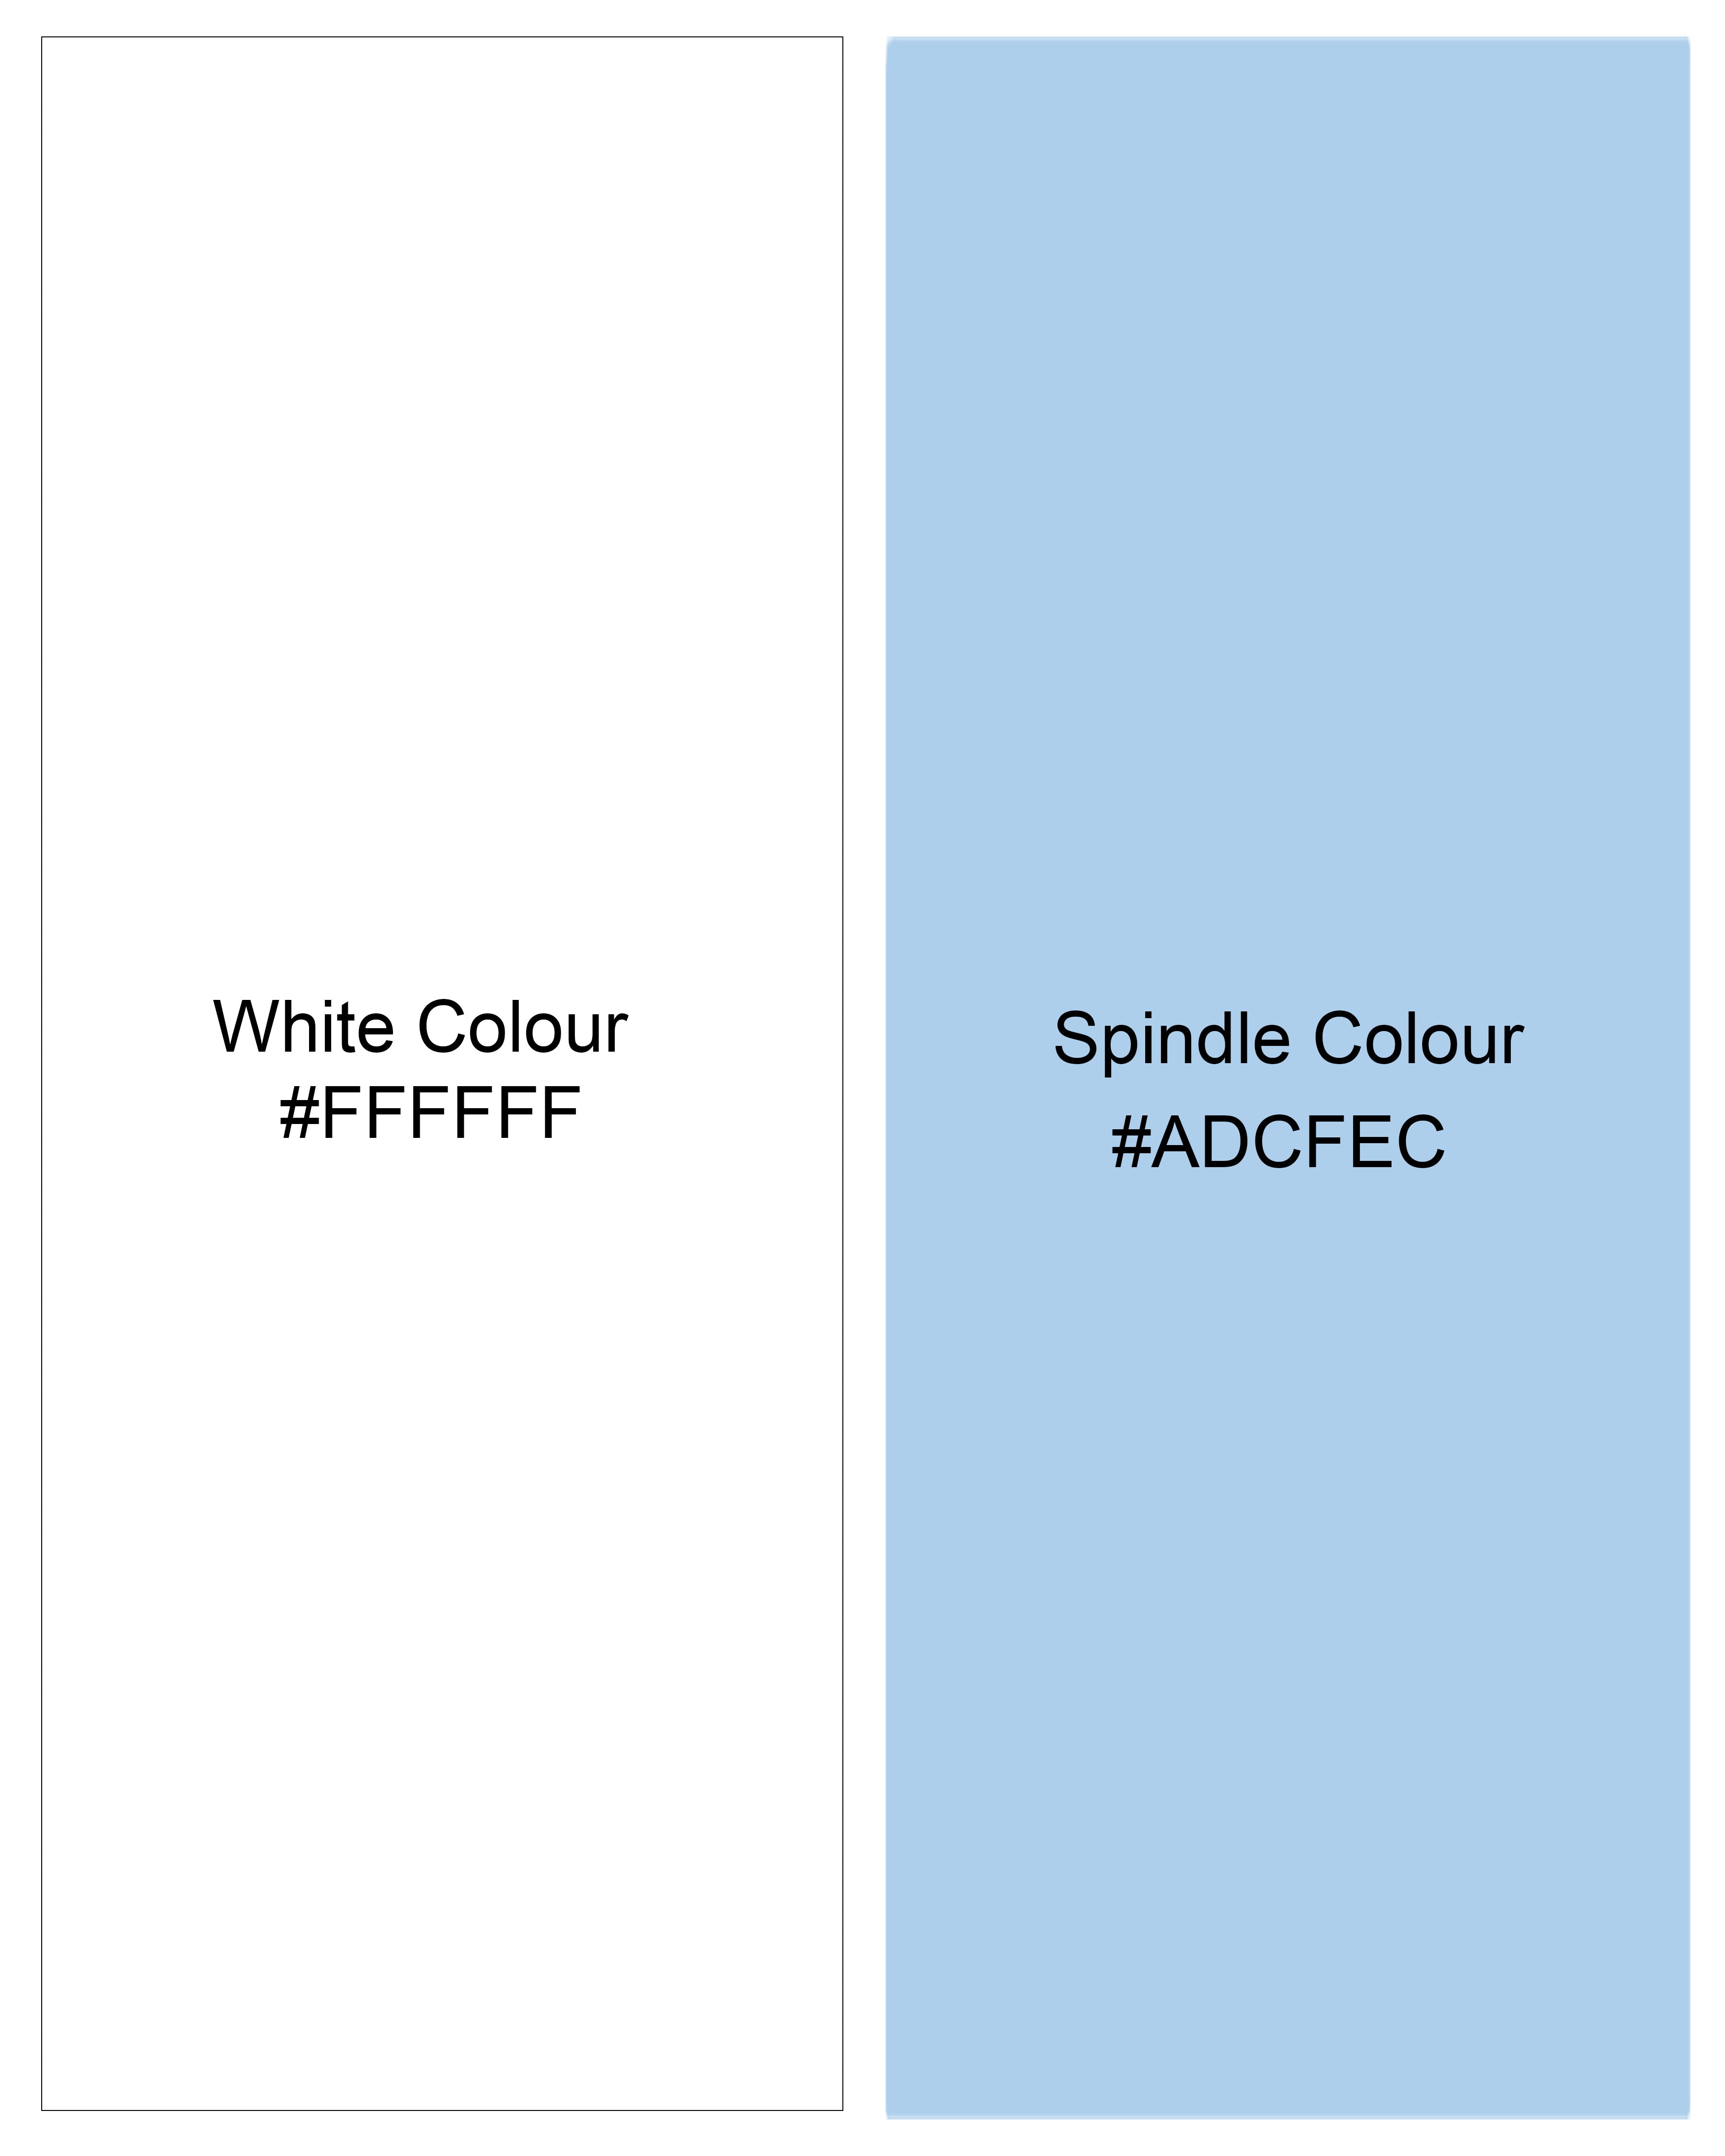 Bright White with Spindle Blue Striped Premium Tencel Kurta Shirt 8497-KS-38,8497-KS-H-38,8497-KS-39,8497-KS-H-39,8497-KS-40,8497-KS-H-40,8497-KS-42,8497-KS-H-42,8497-KS-44,8497-KS-H-44,8497-KS-46,8497-KS-H-46,8497-KS-48,8497-KS-H-48,8497-KS-50,8497-KS-H-50,8497-KS-52,8497-KS-H-52